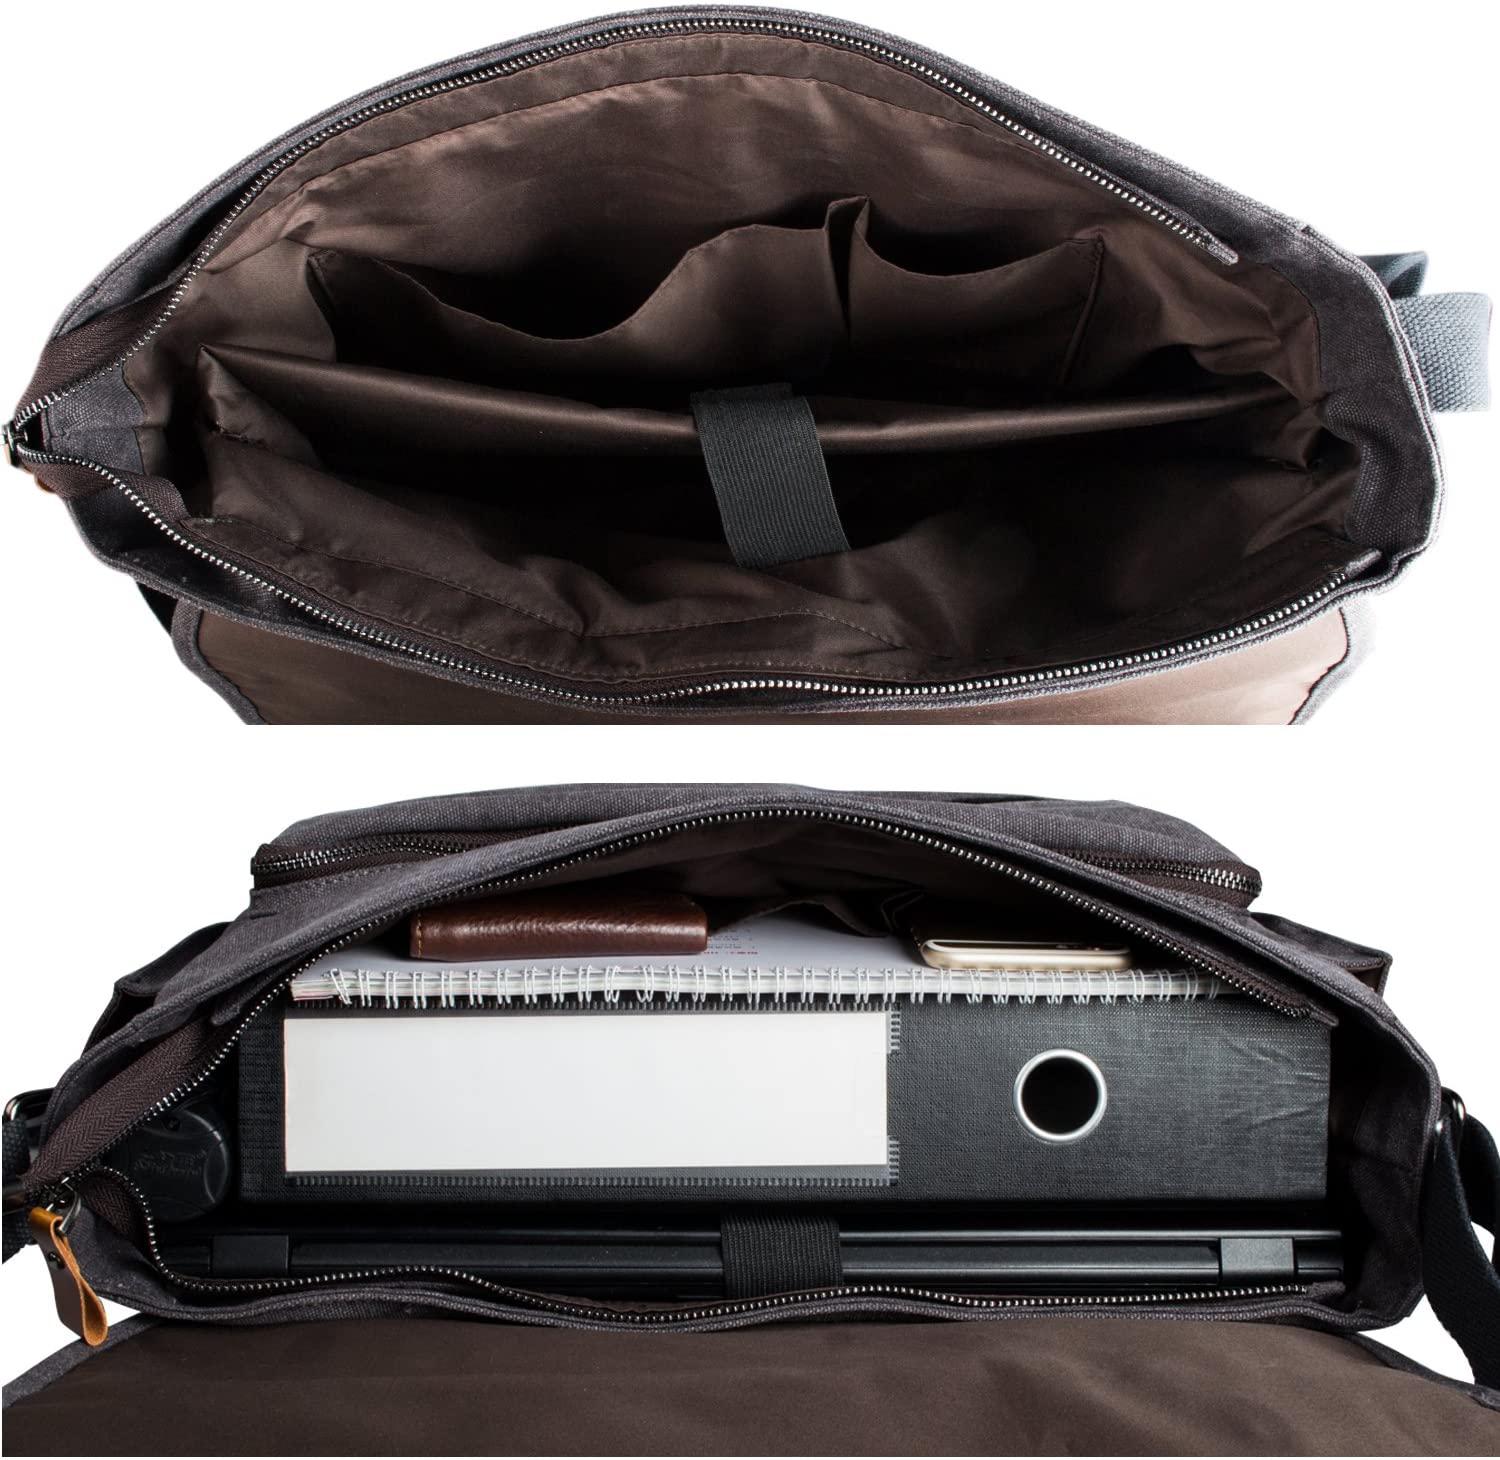 Estarer Mens 15-15.6 inch Laptop Bag Computer Messenger Satchel ...